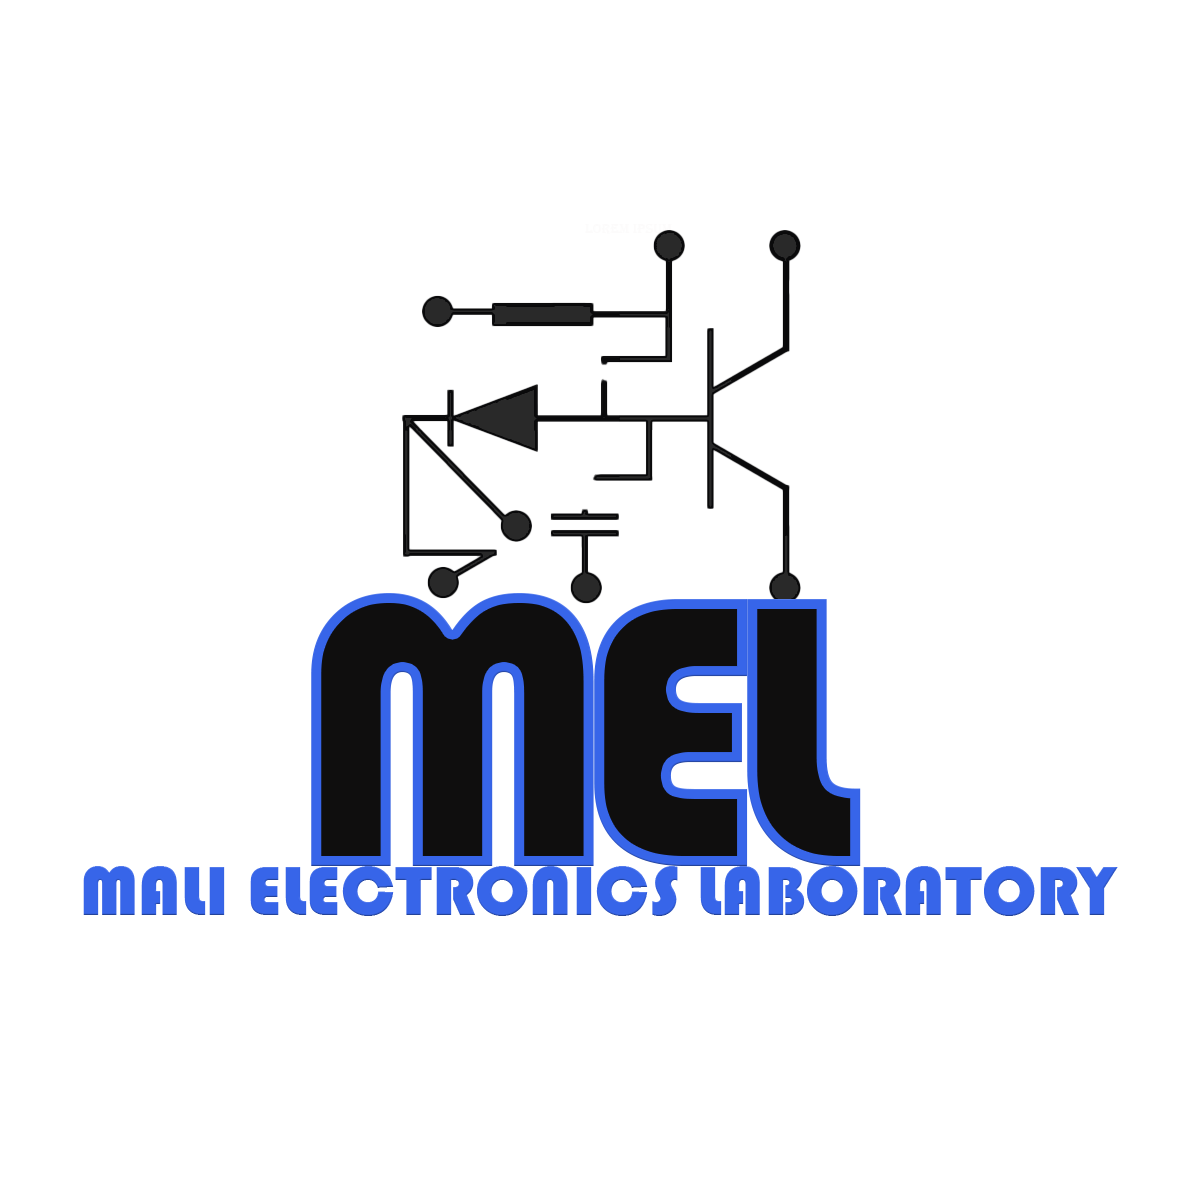 malielectronicslaboratory